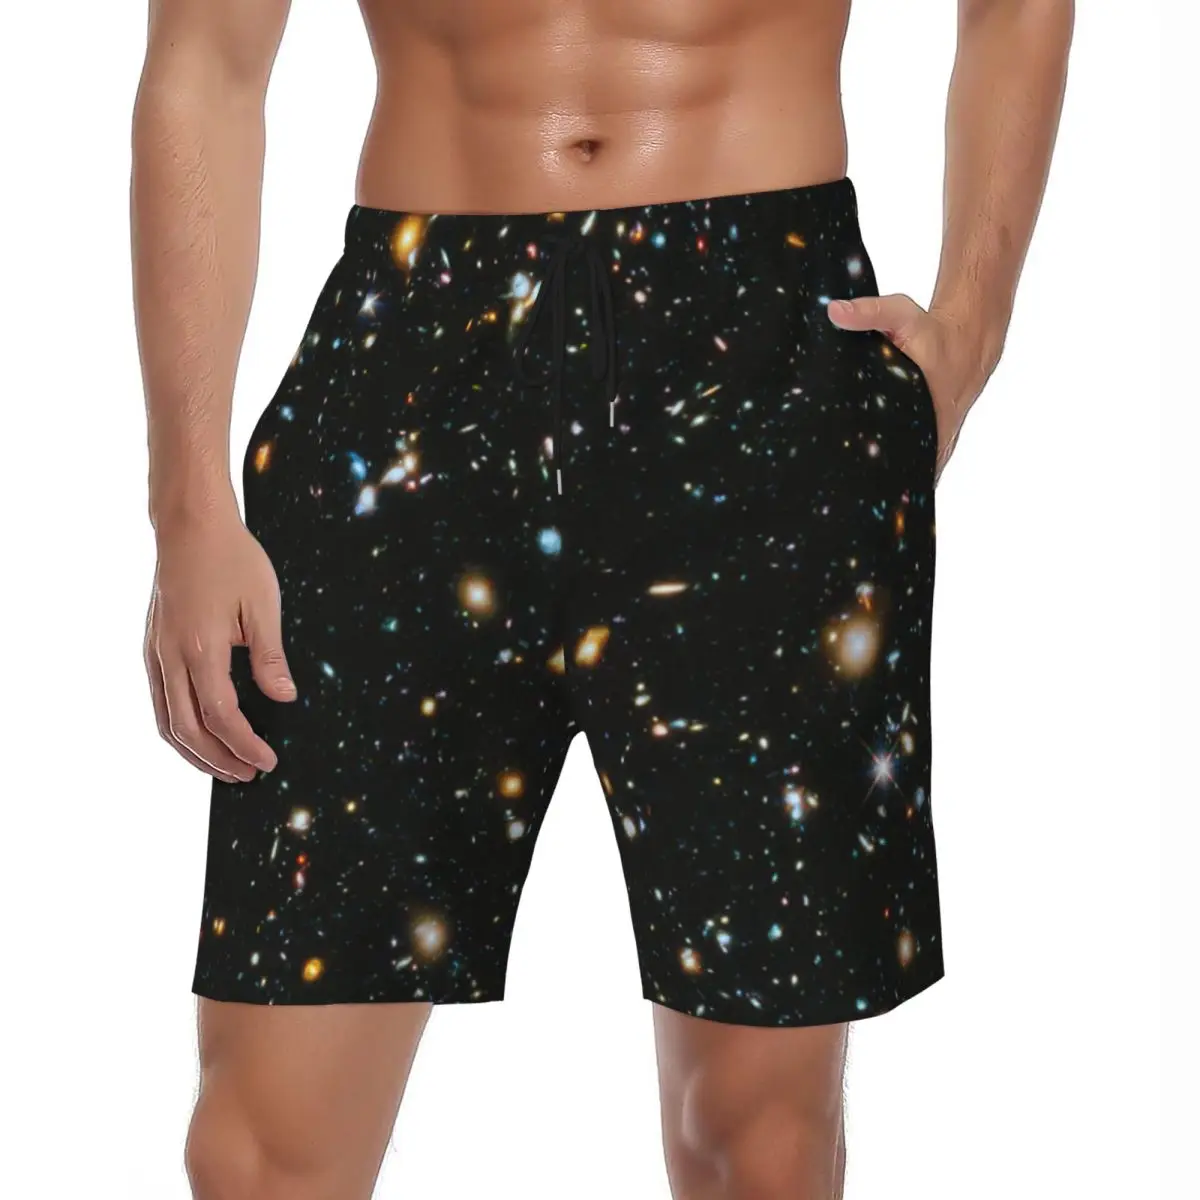 

Шорты Galaxy Star Board мужские летние, художественные пляжные шорты с космическим принтом звезд, для бега, серфинга, модный дизайн, плавки большого размера